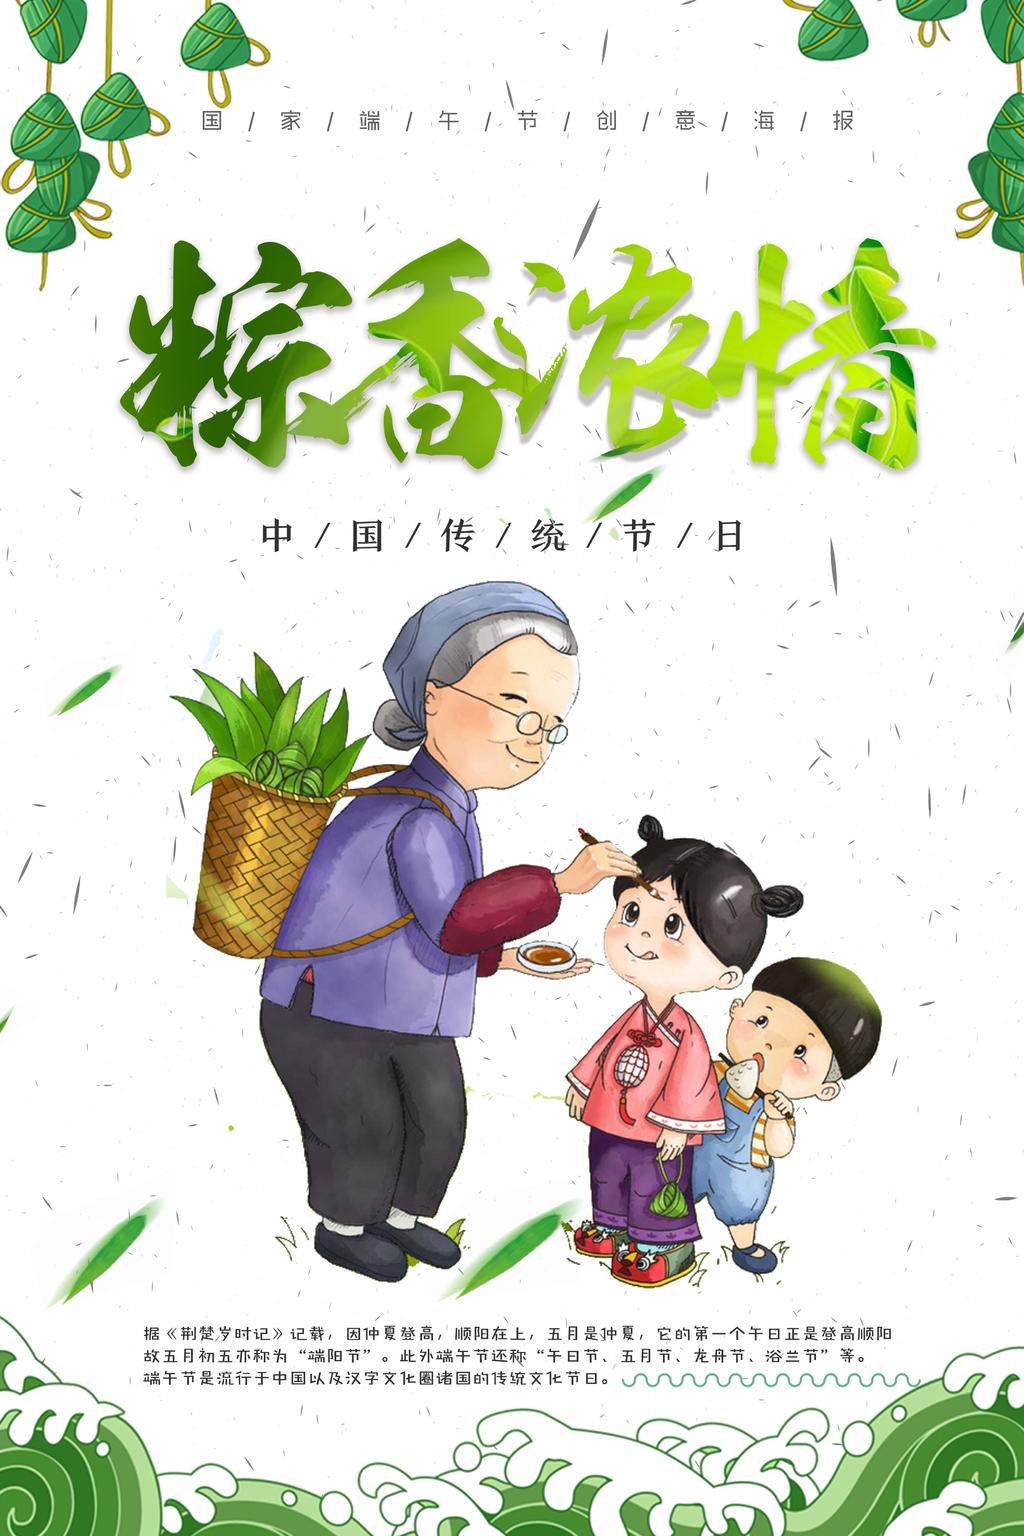 端午节粽子宣传海报